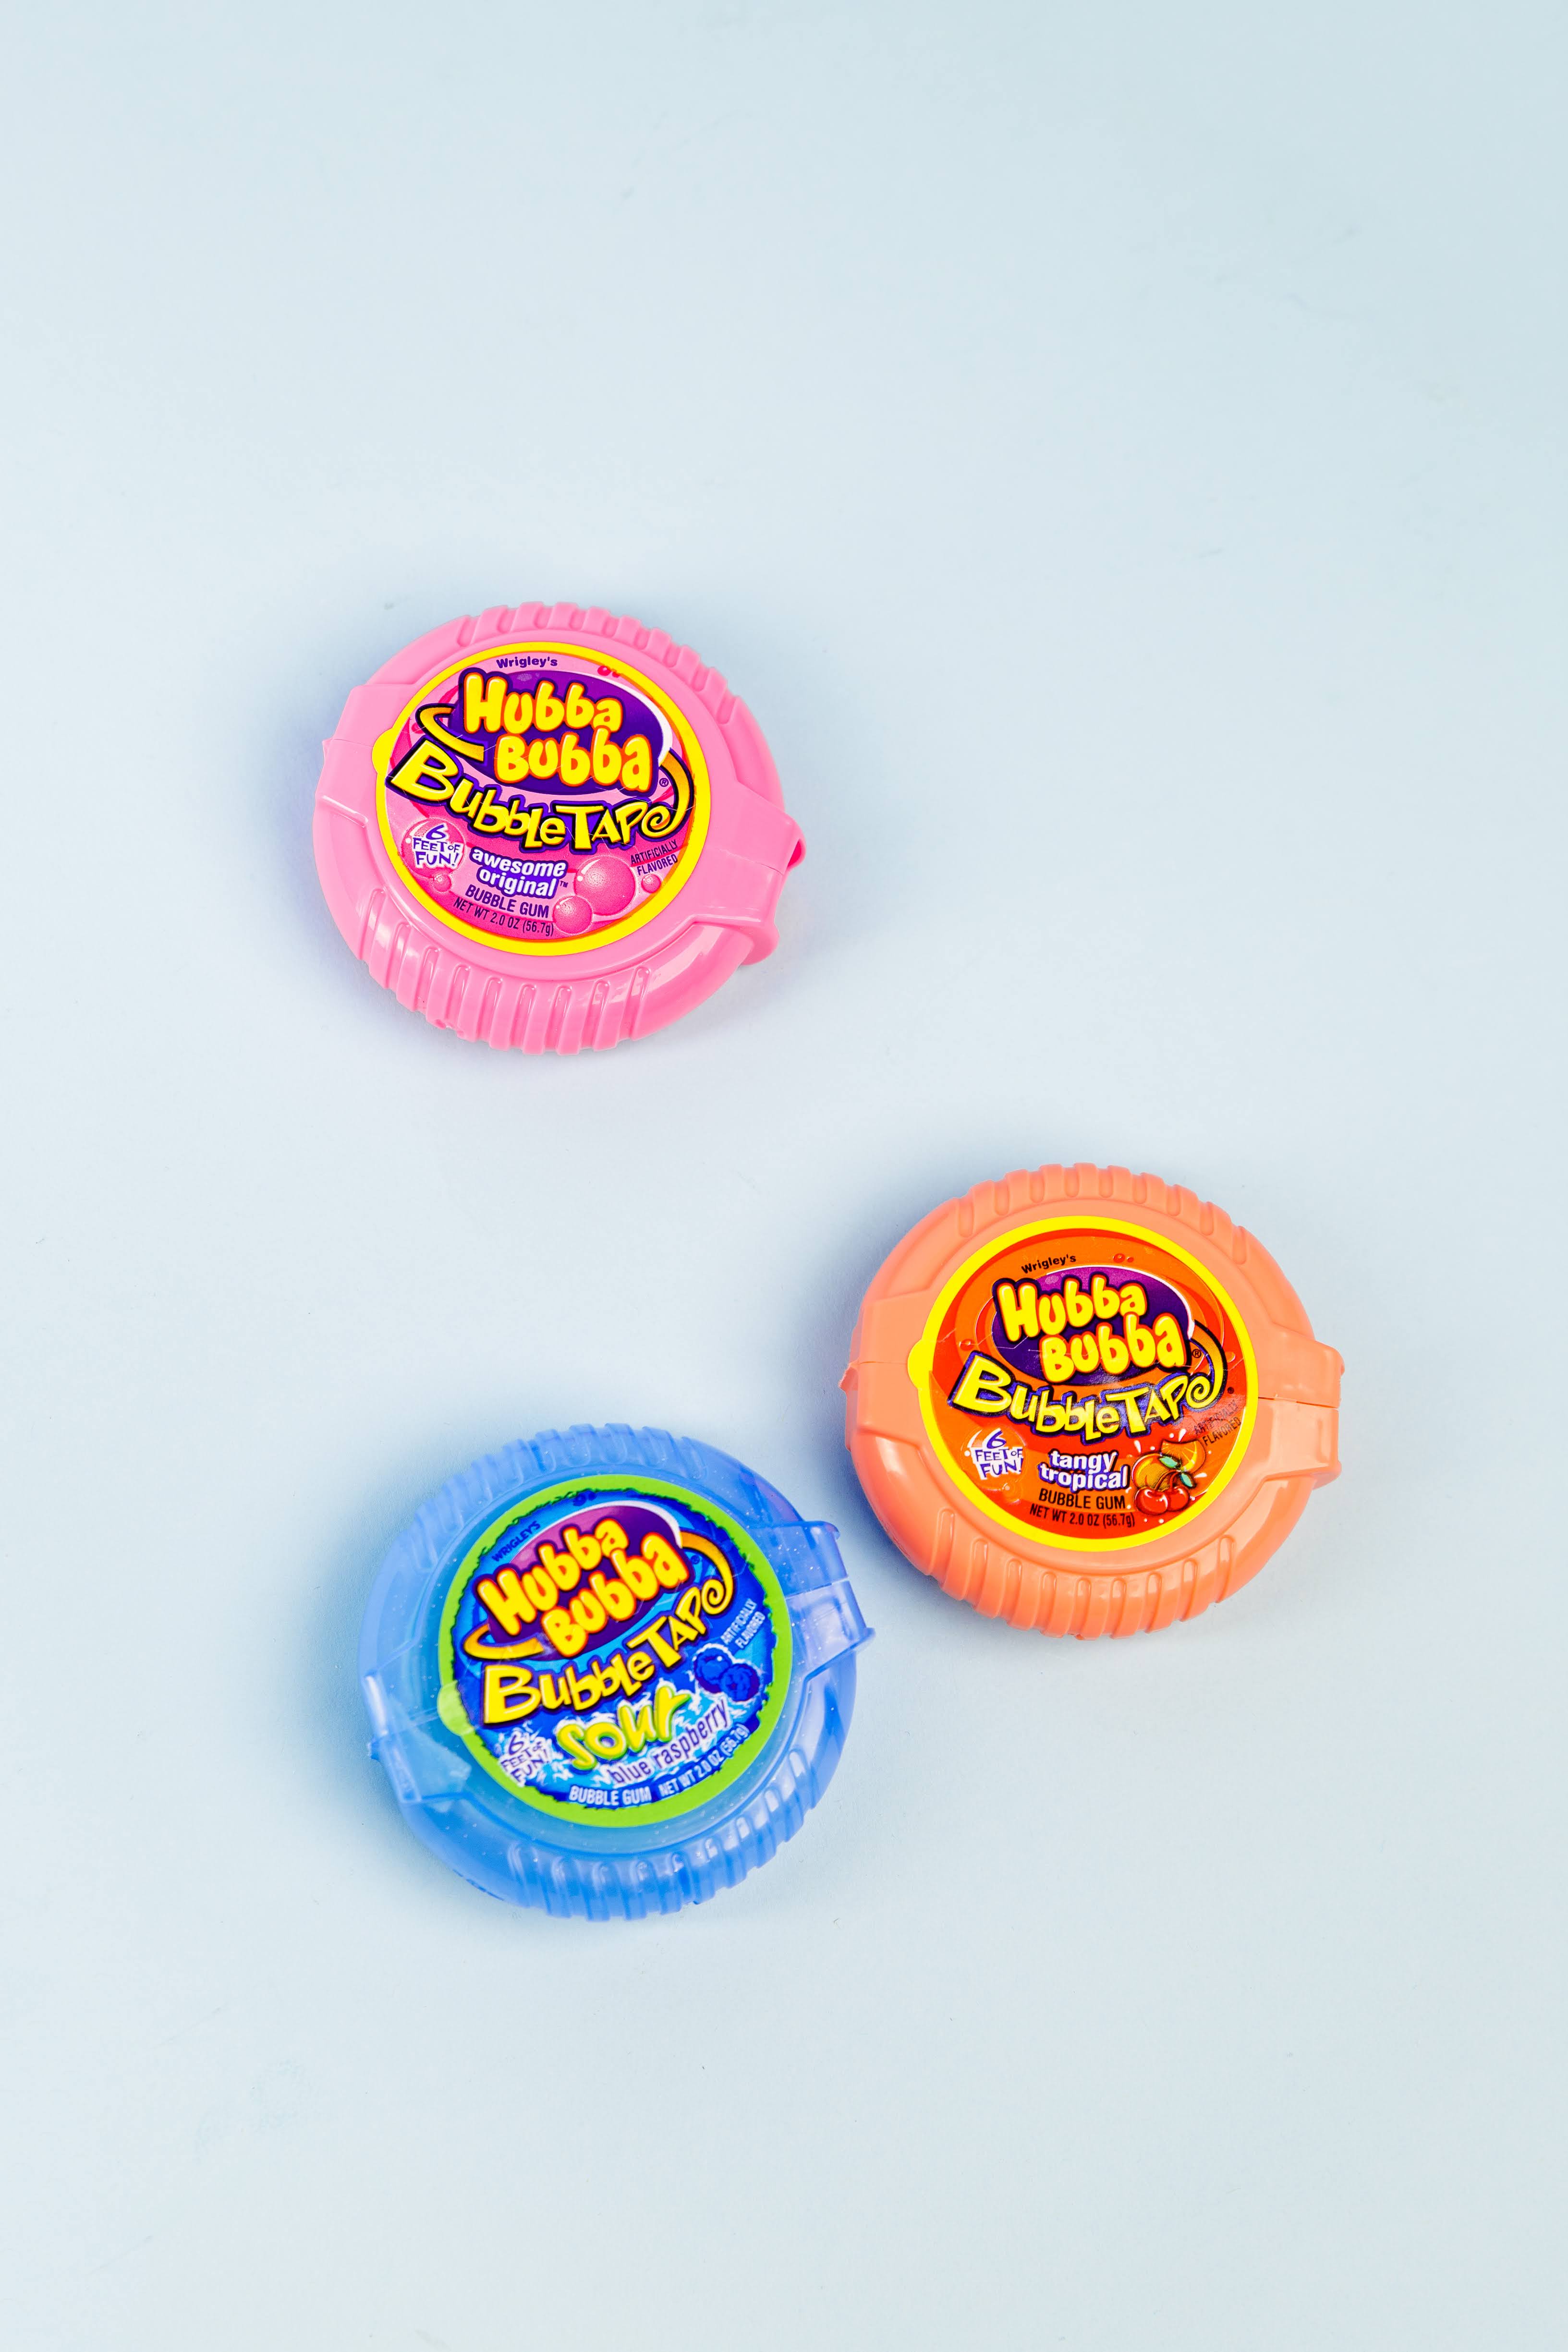 Hubba Bubba Bubble Gum, Bubble Tap - 2.0 oz